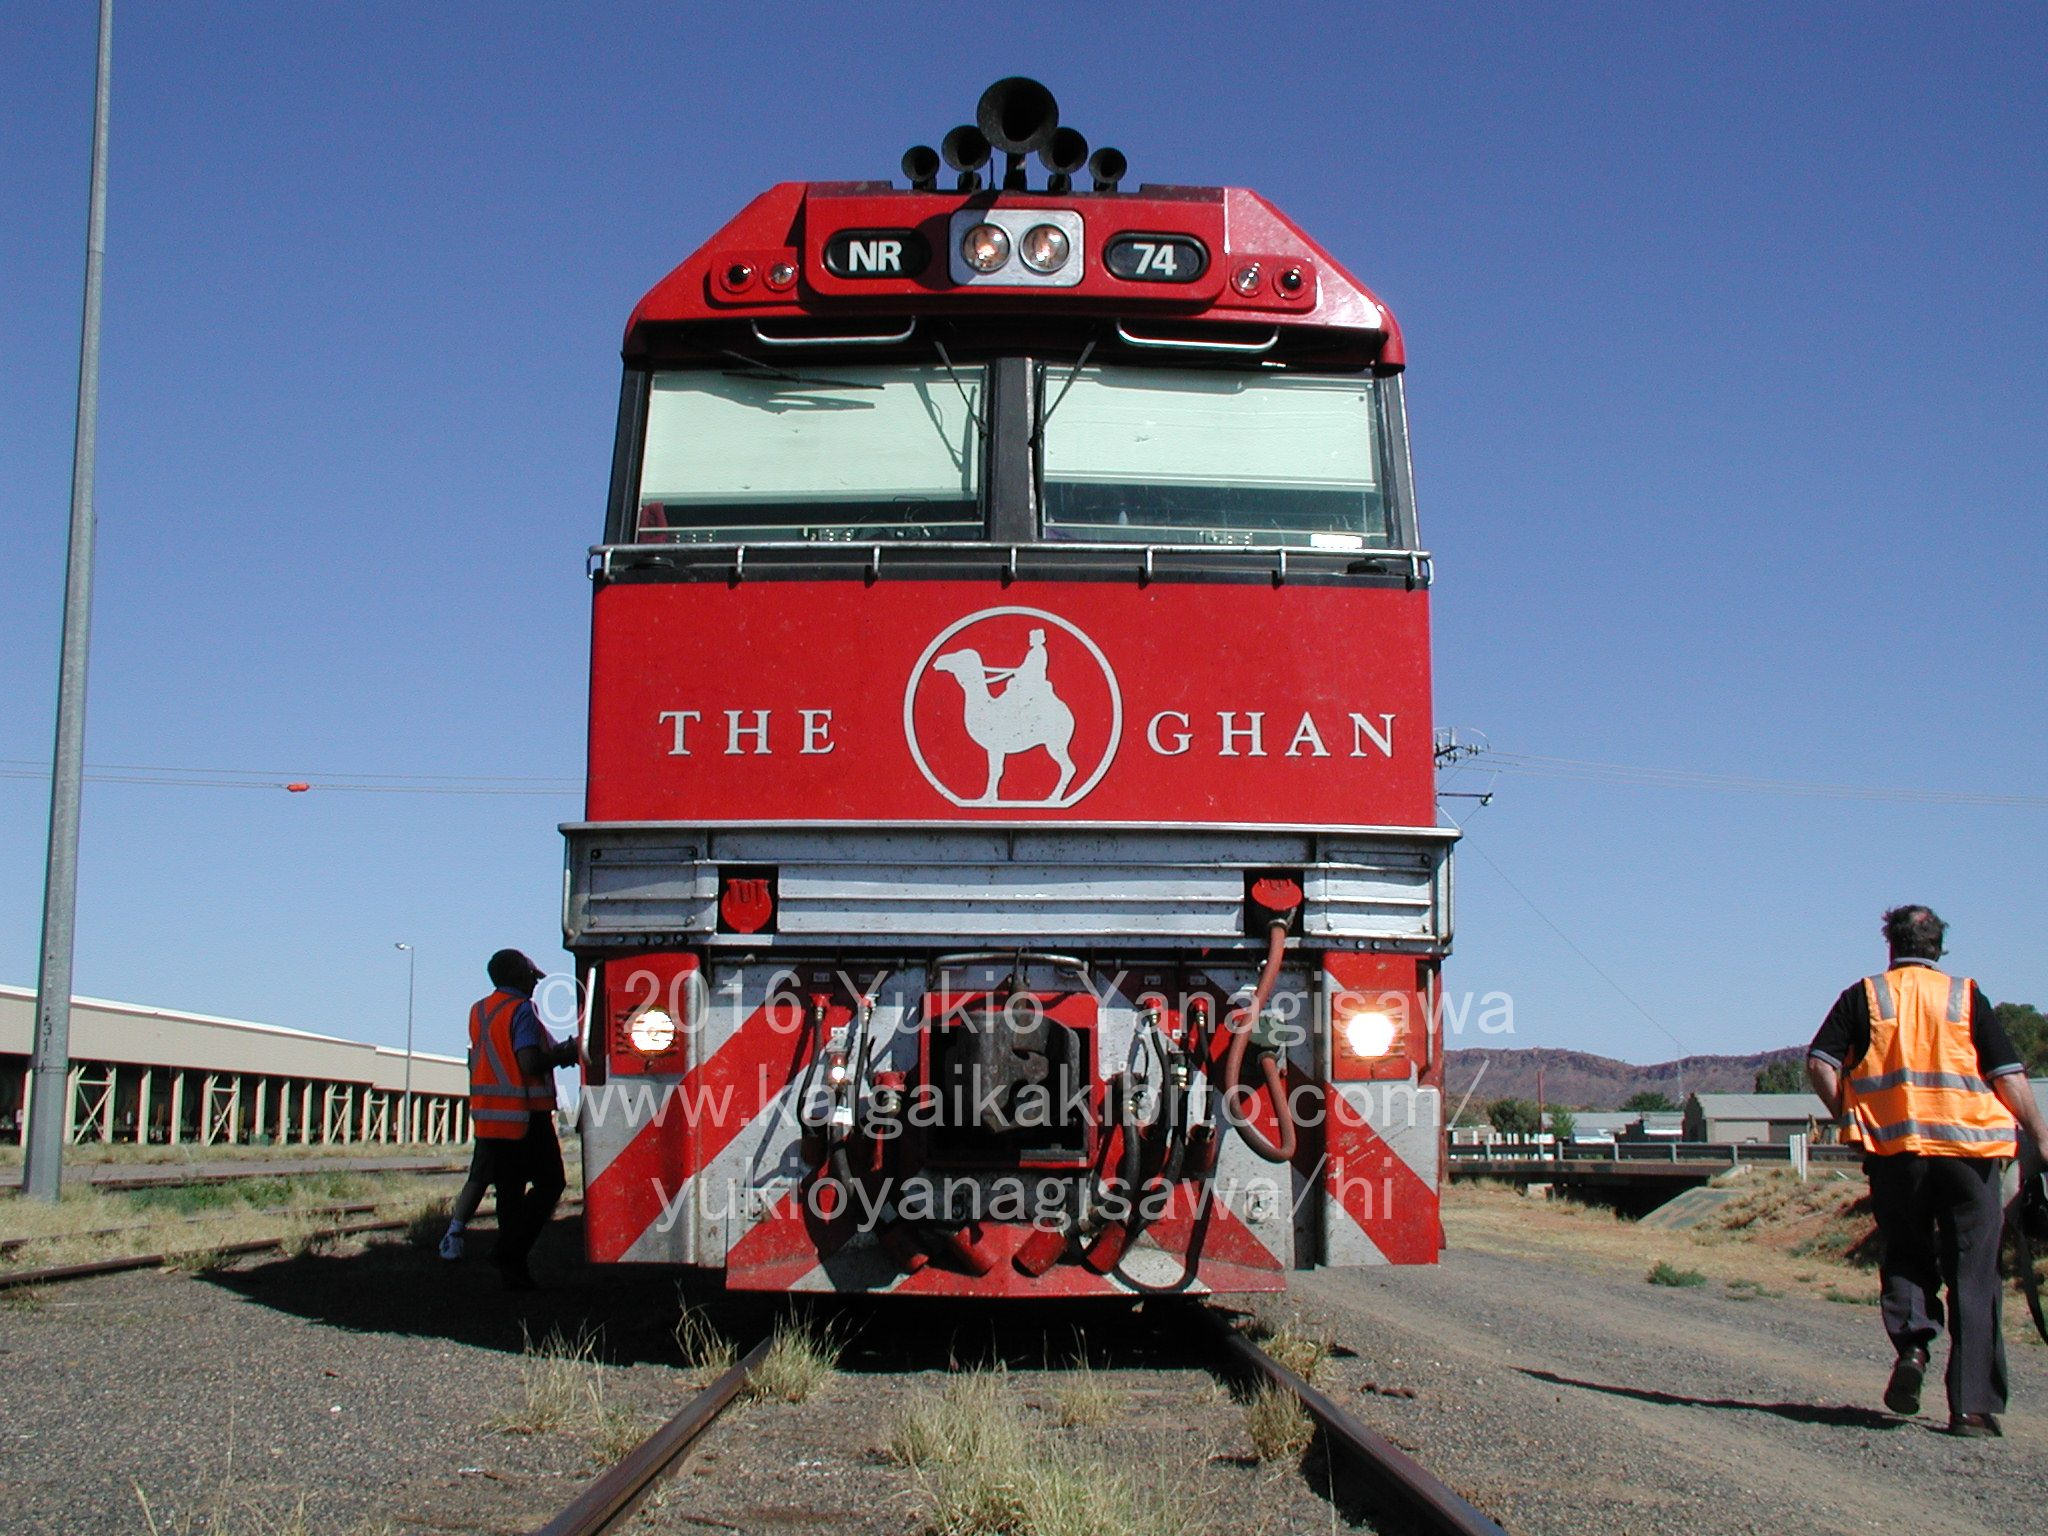 オーストラリア在住ライター直伝 豪華寝台列車 ザガン の5 Aの魅力